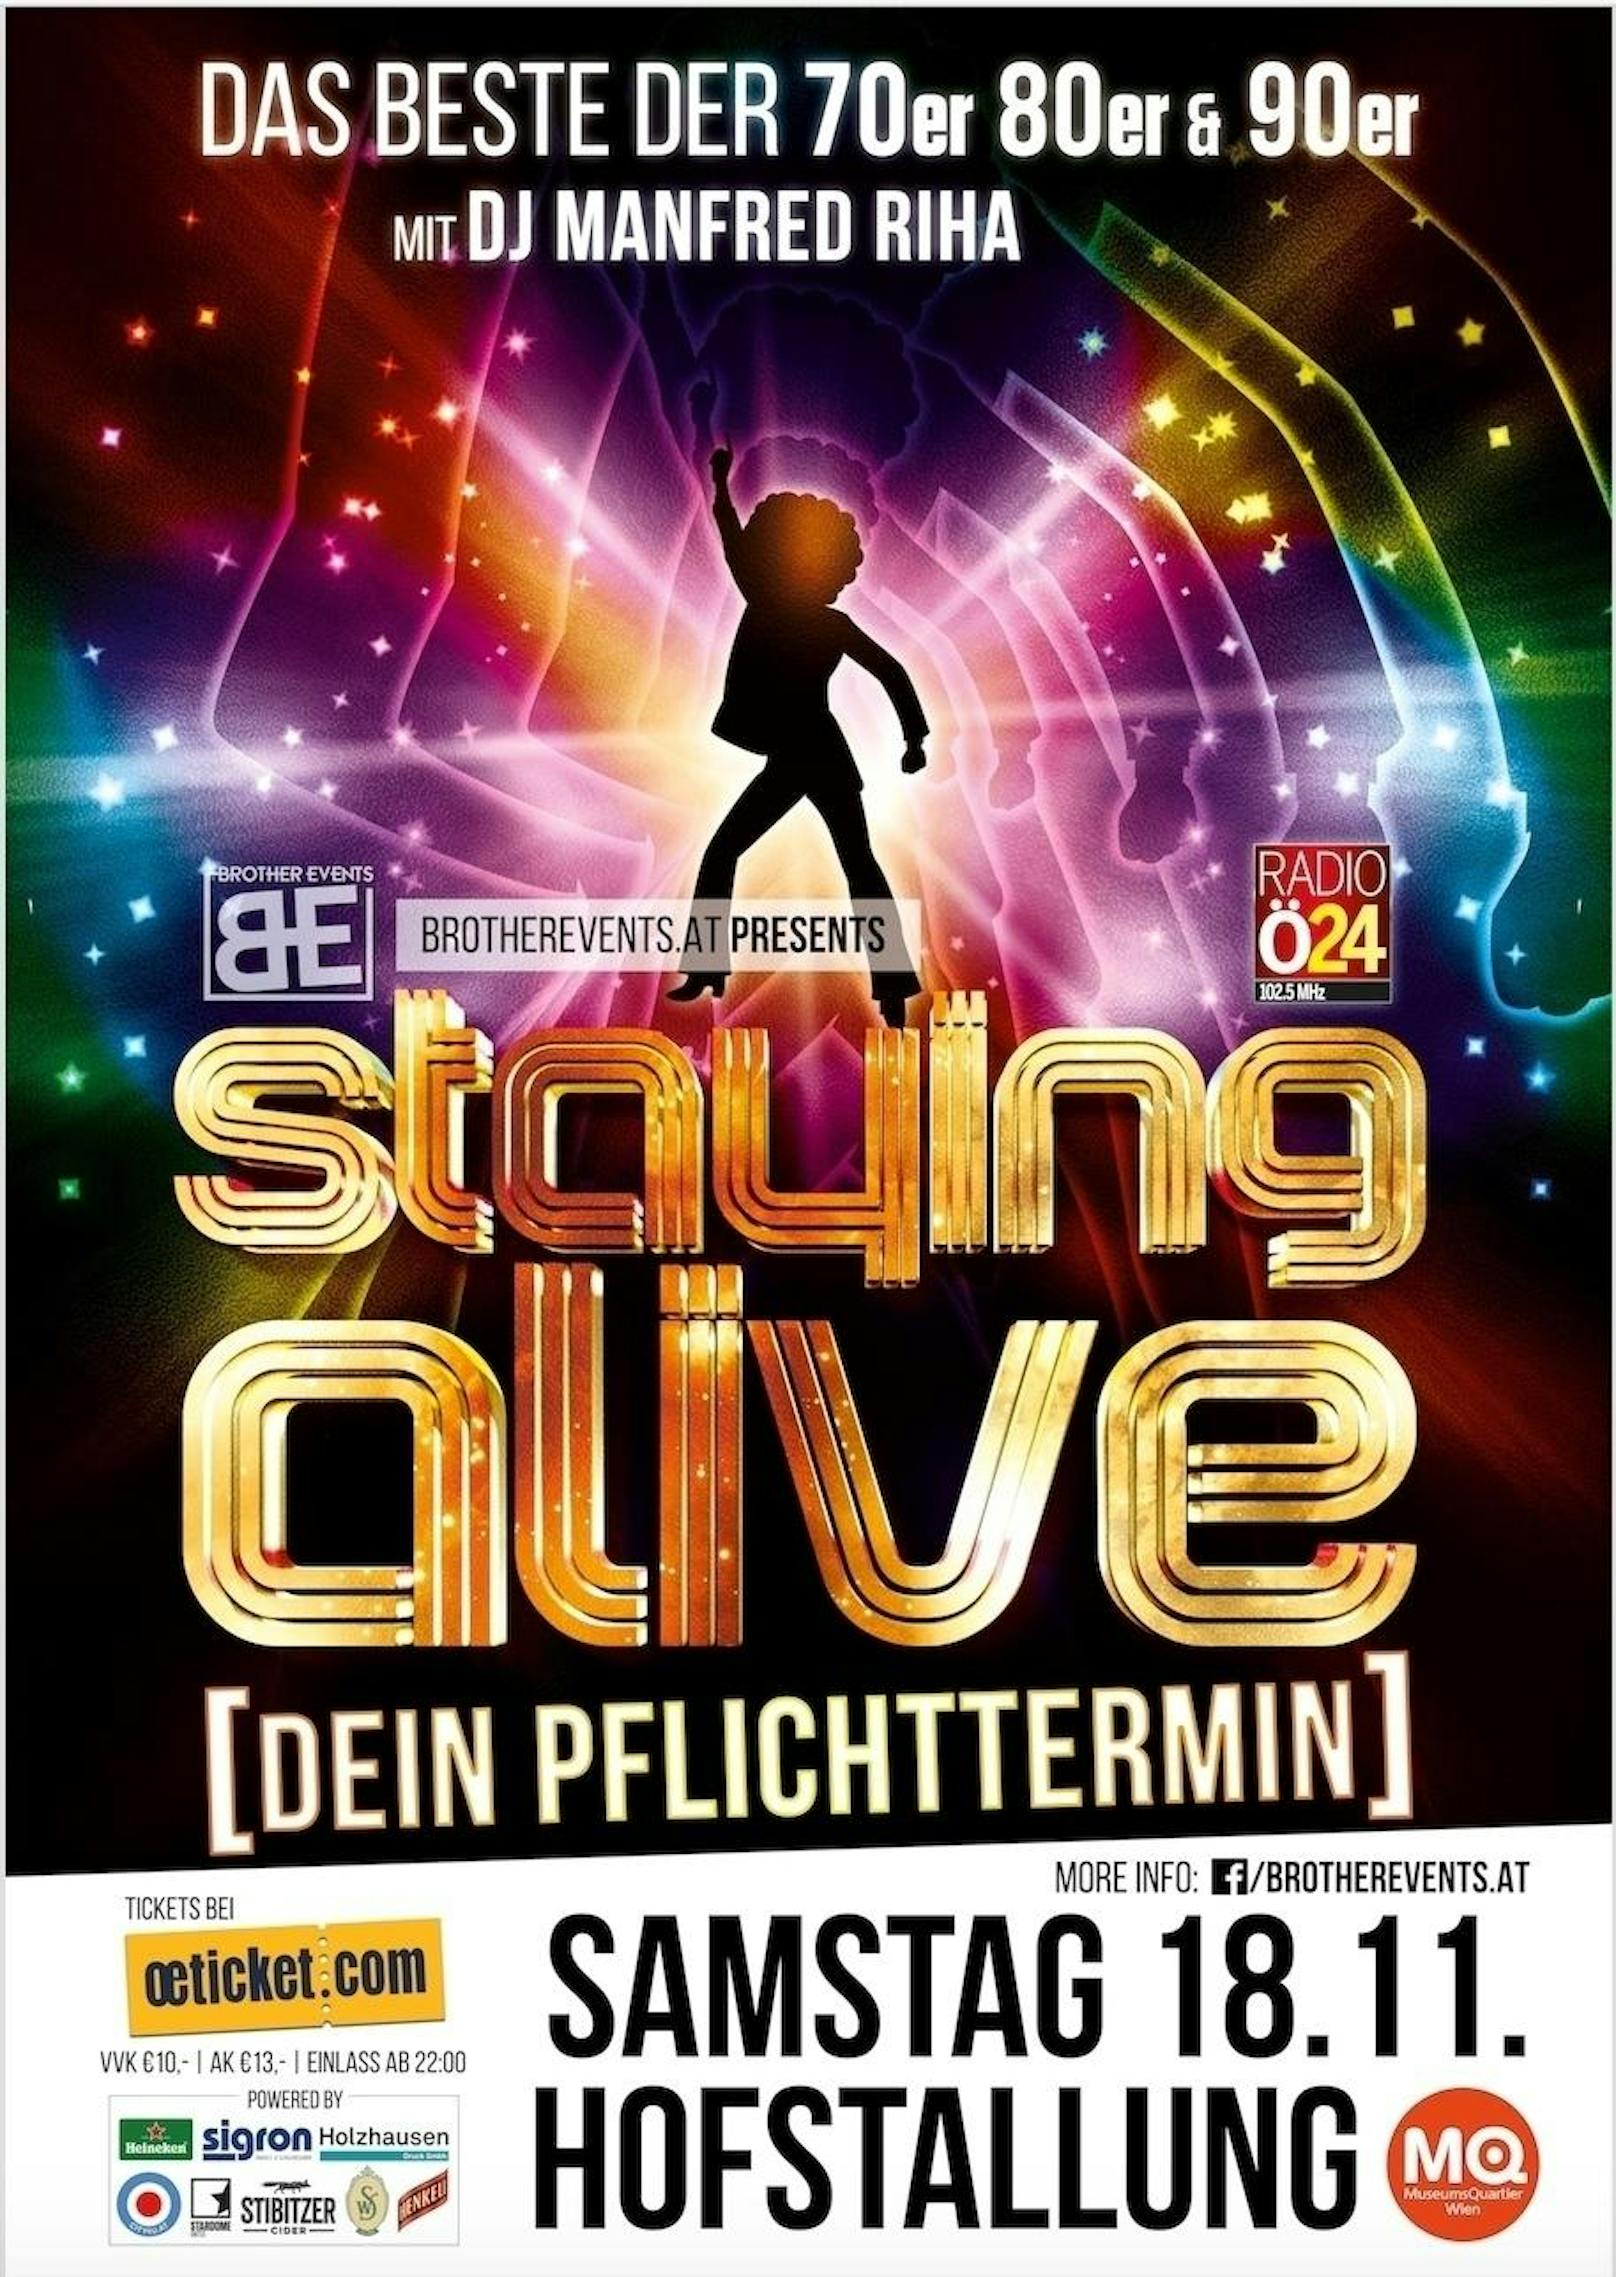 Event-Reihe "Staying Alive" am 18. November in den Hofstallungen im Wiener MQ: Jetzt mitmachen & gewinnen!